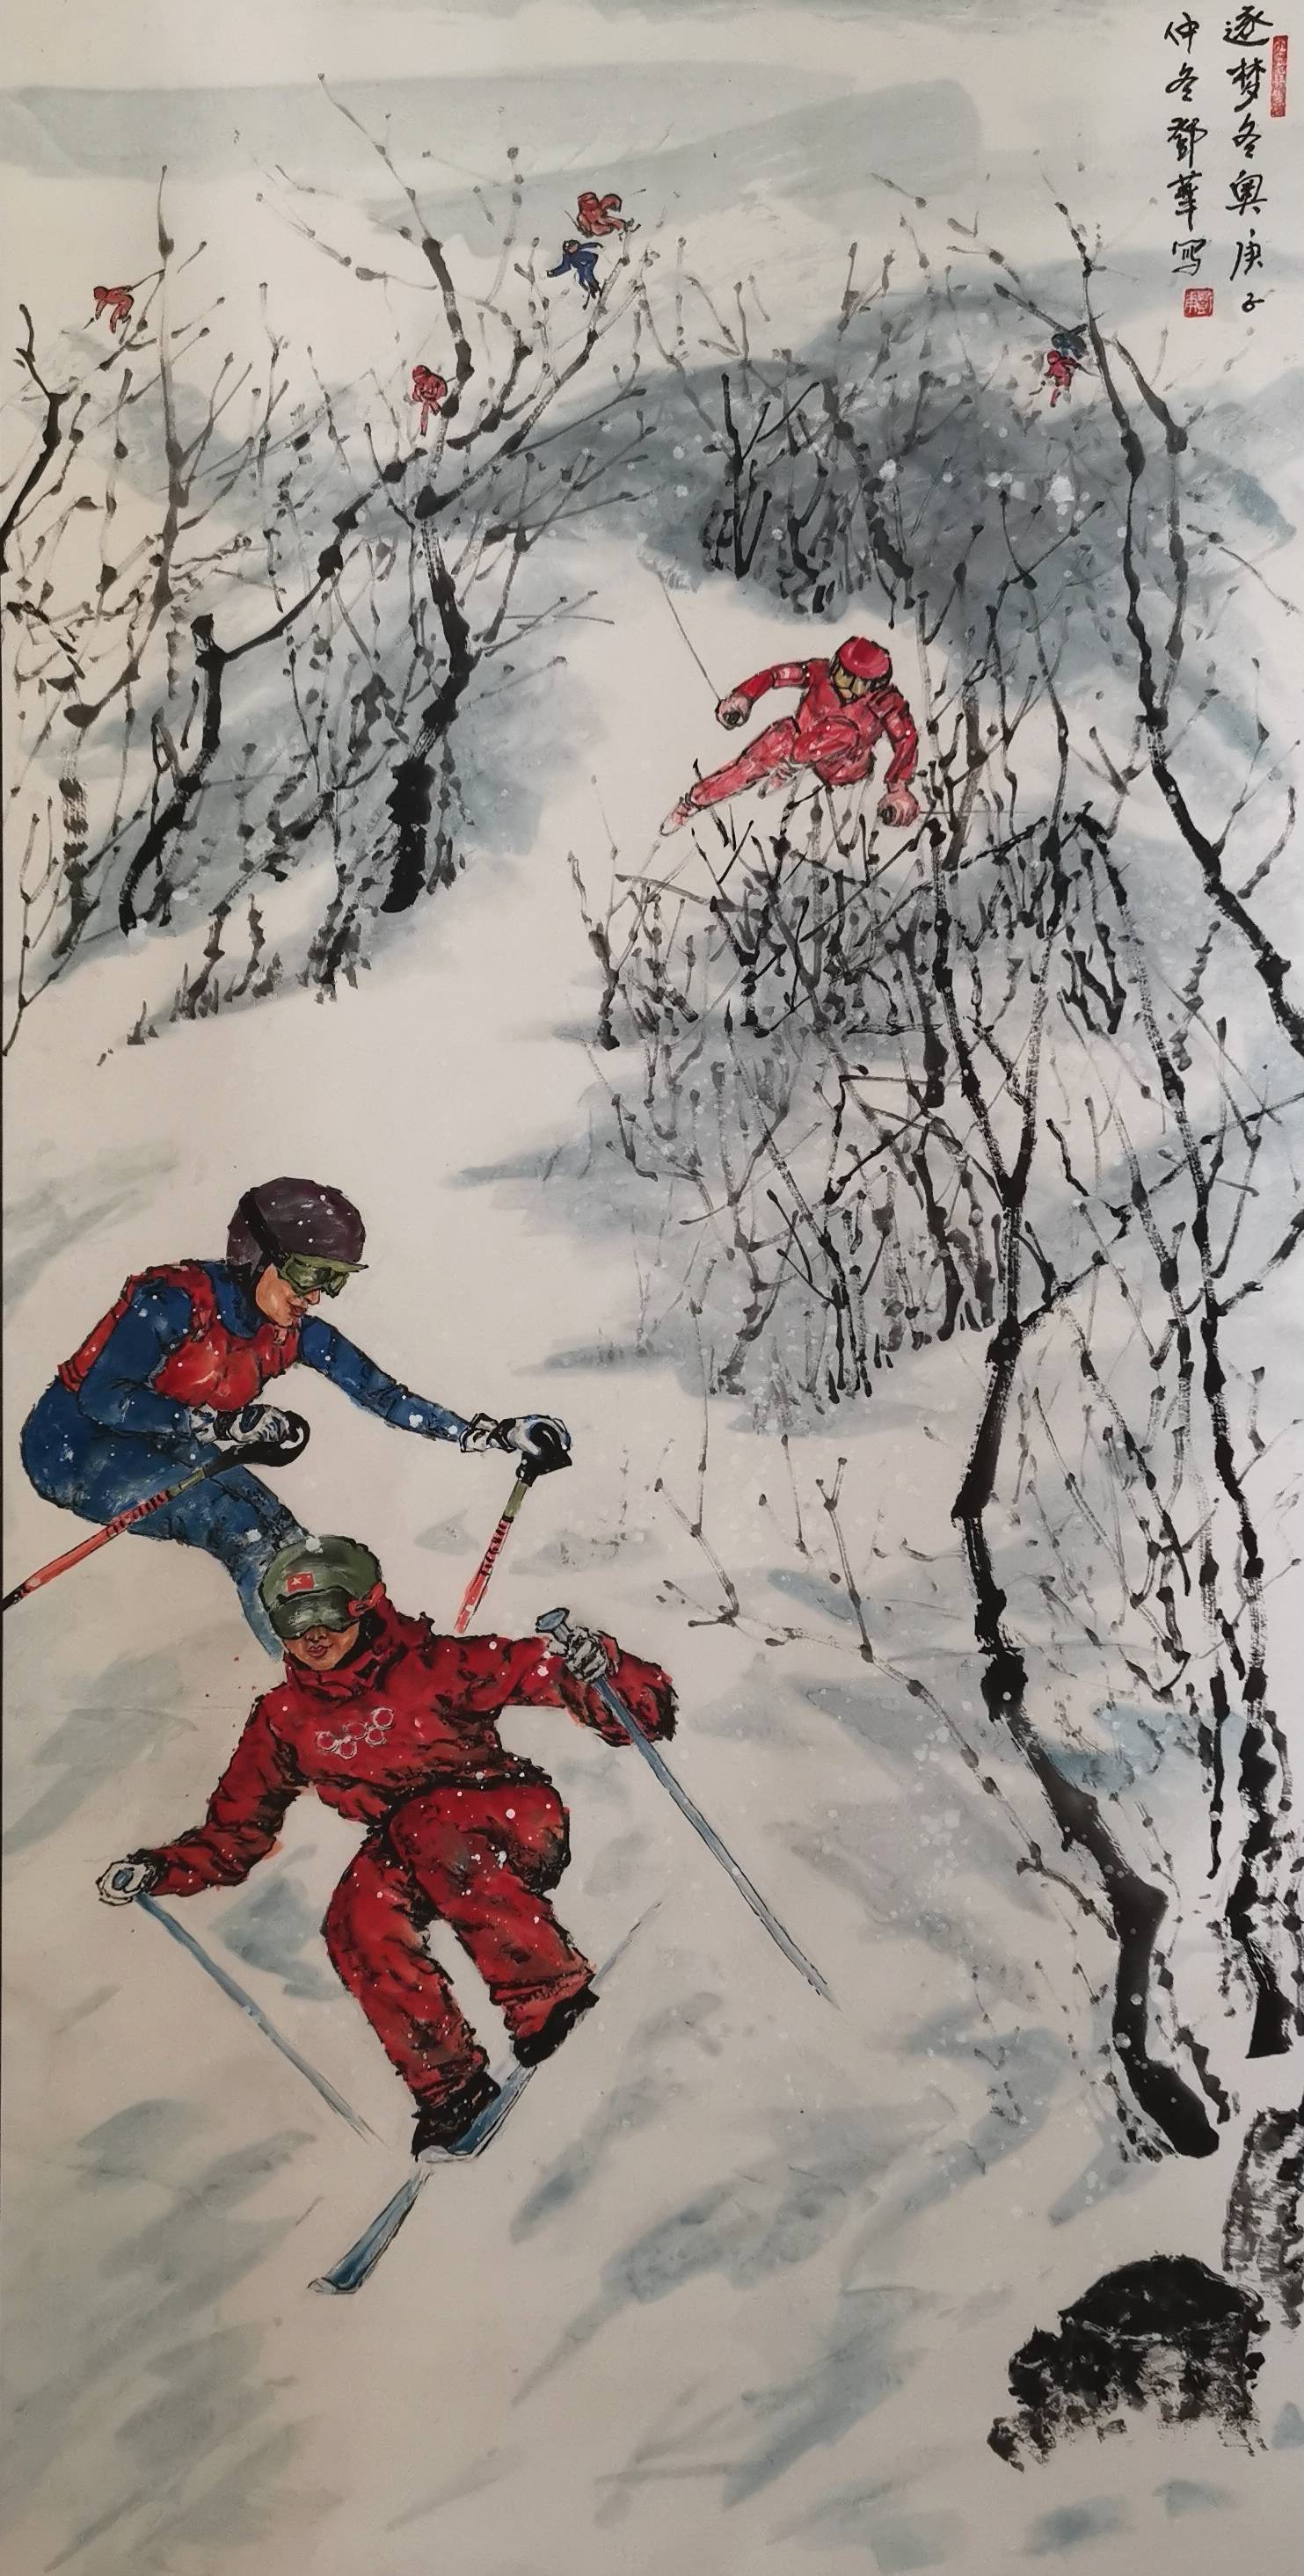 冰雪画艺术家的创作热情,宣传北京冬奥,会鼓舞一大批冰雪运动爱好者去